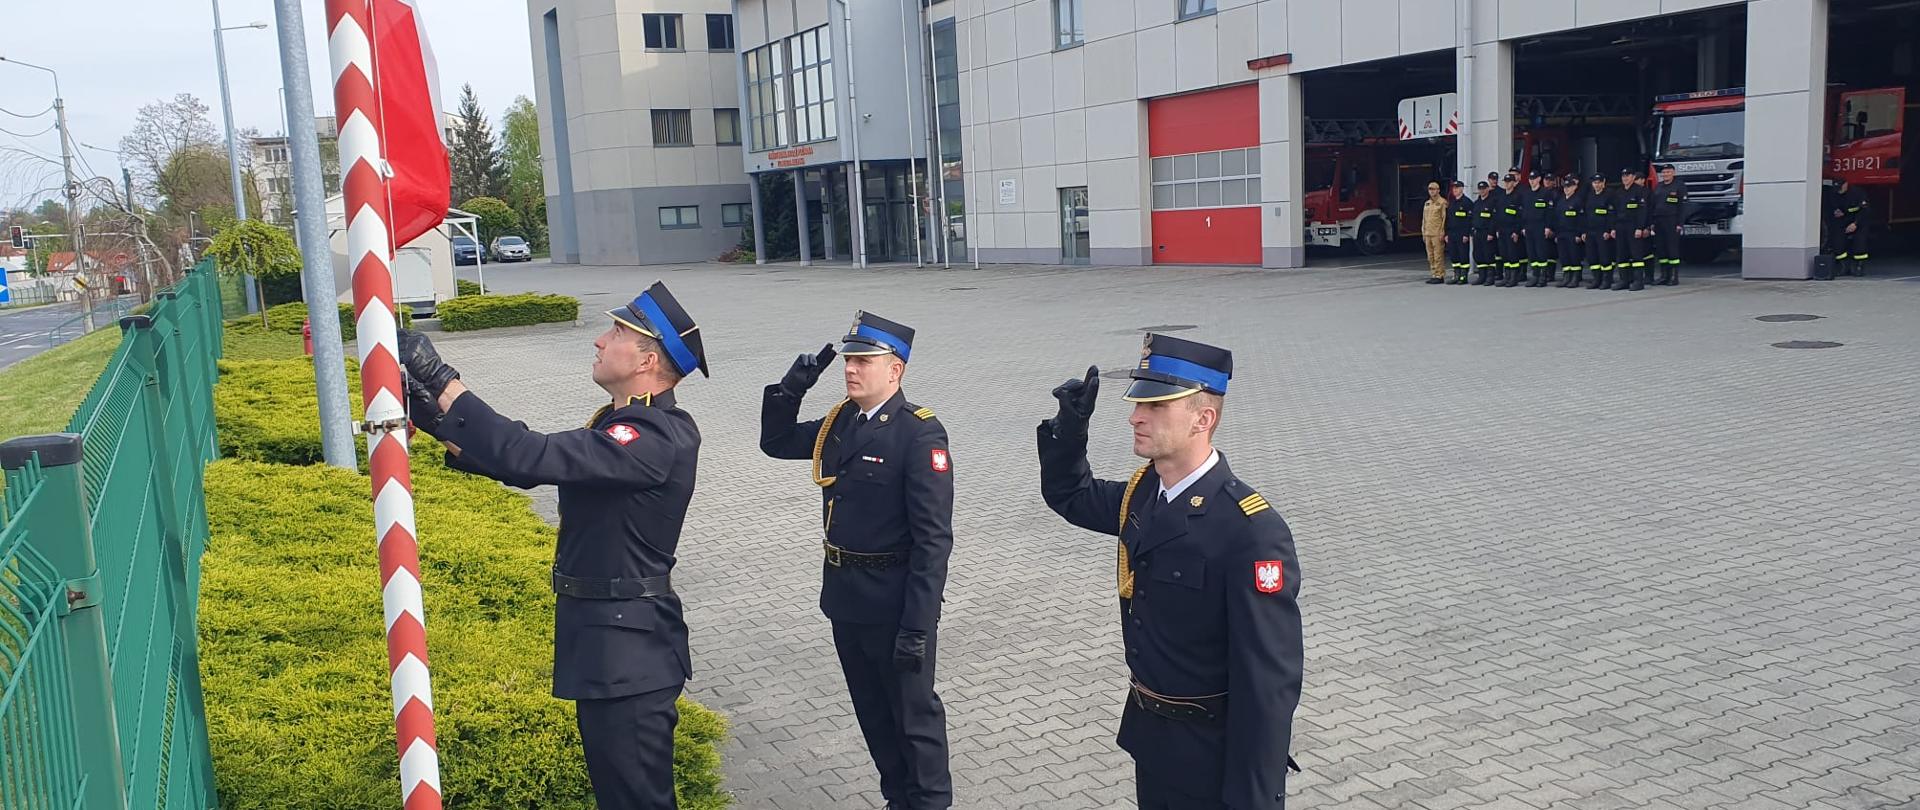  W dniu 2 maja 2023 roku o godzinie 8.00 w Komendzie Miejskiej PSP w Bielsku-Białej, miały miejsce uroczyste zmiany służby, których elementem było podniesienie flagi państwowej na maszt z okazji Dnia Flagi Rzeczypospolitej Polskiej